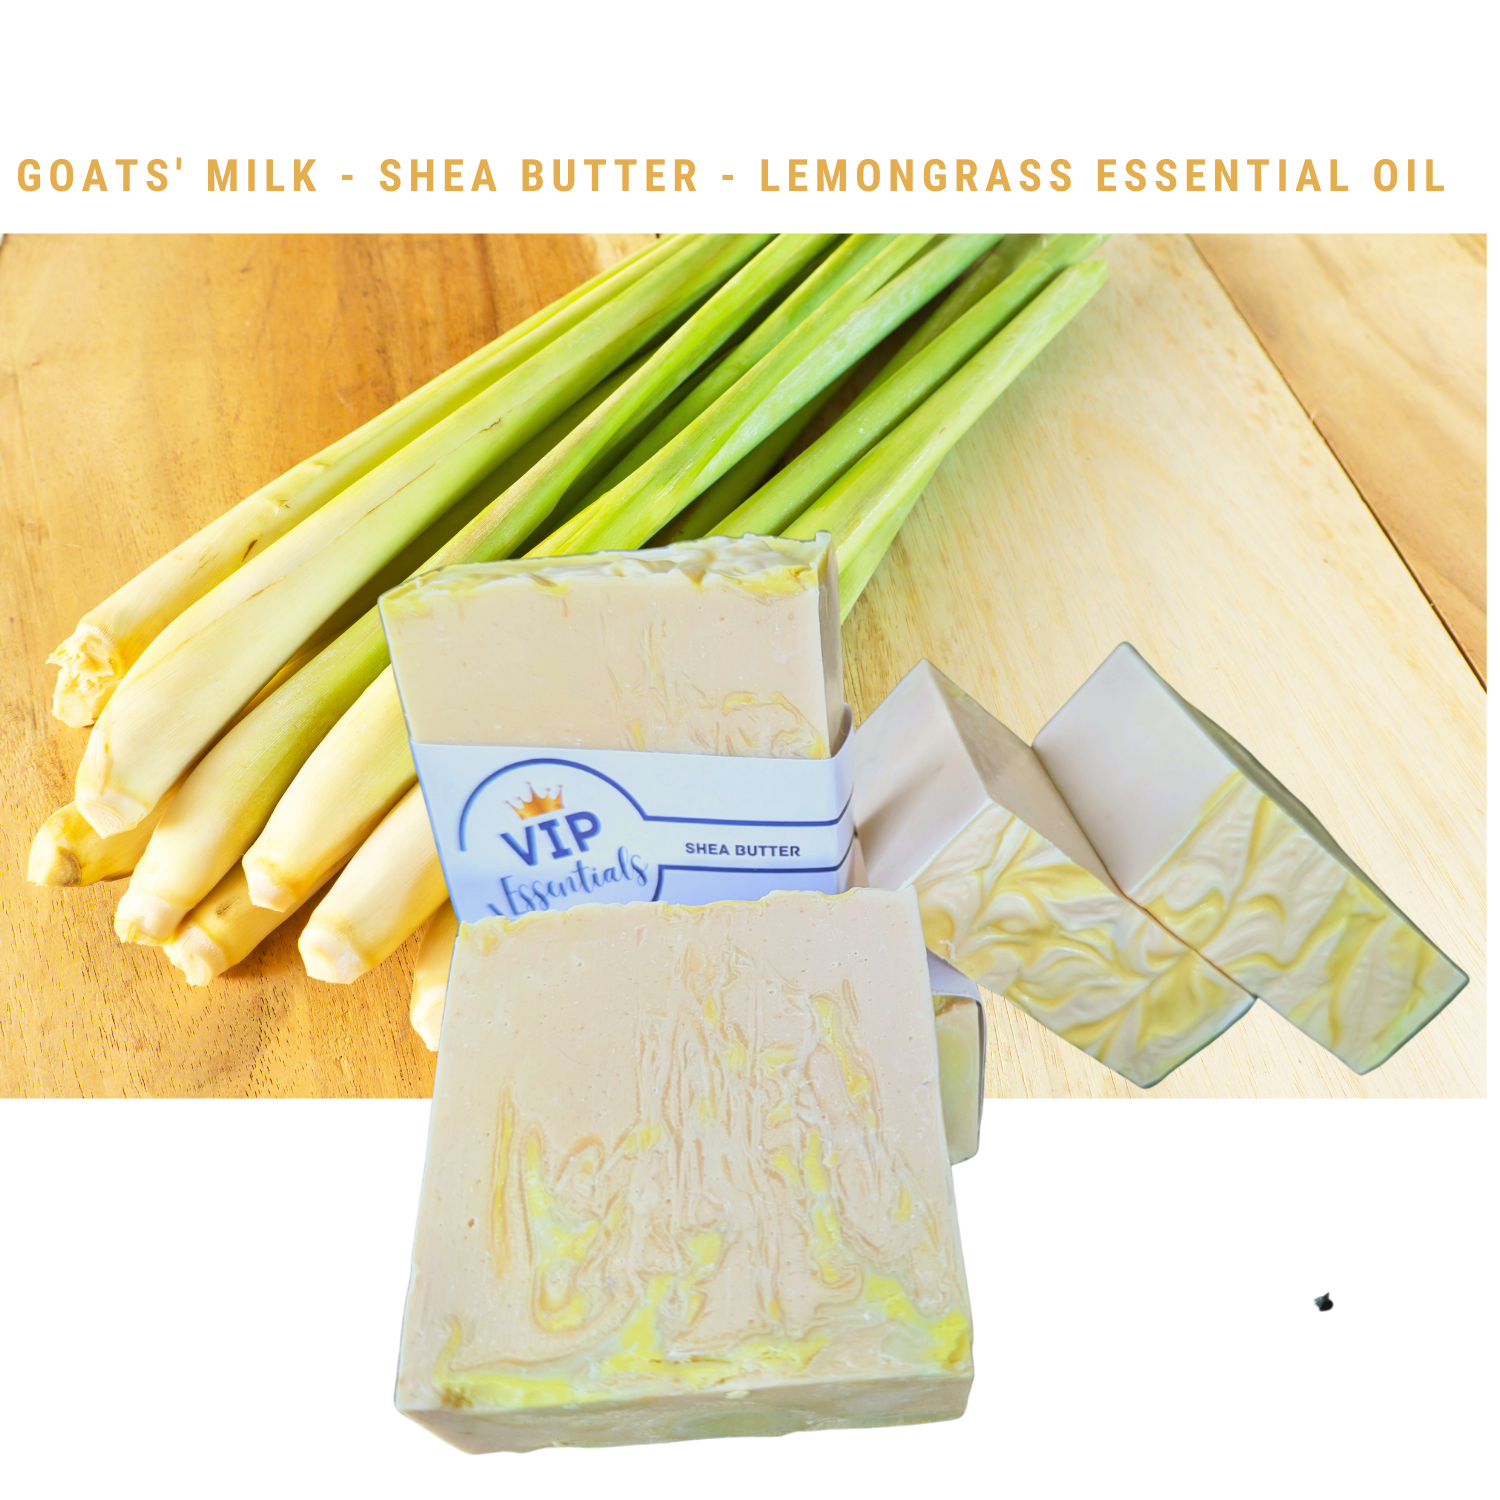 Lemongrass Essential Oil - Goats' Milk - Shea Butter